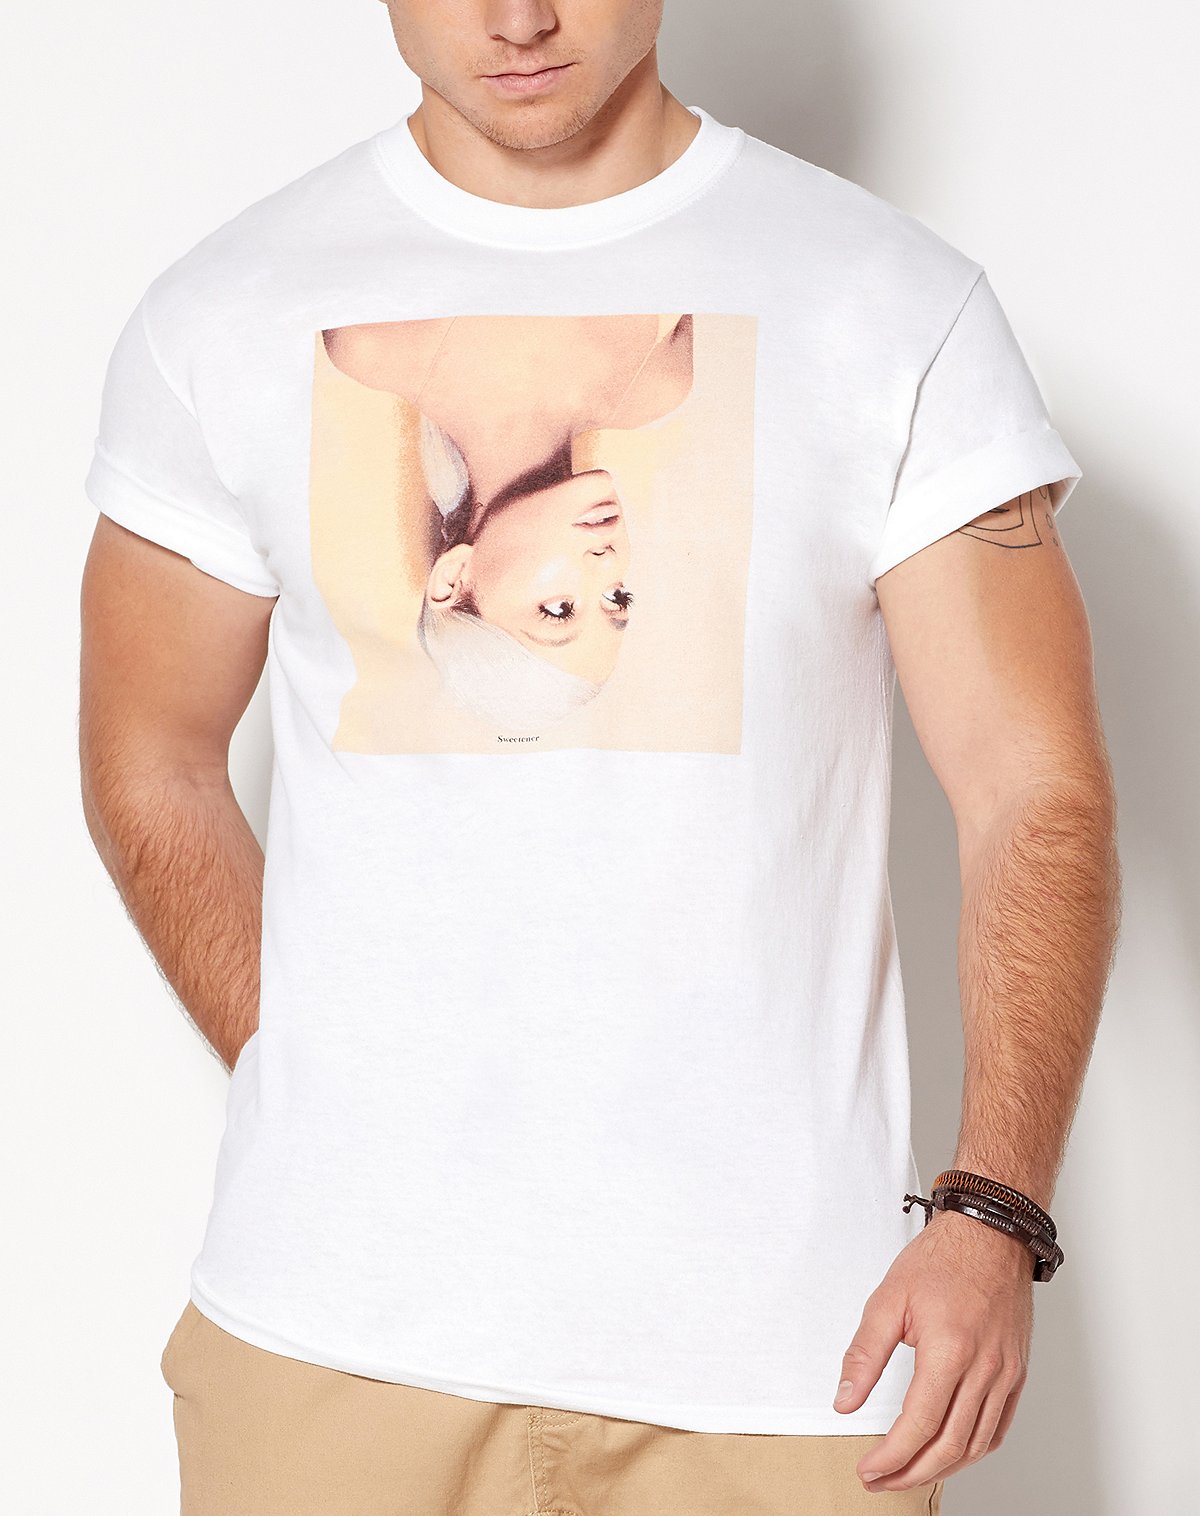 Sweetener Ariana Grande T Shirt - Spencer'S